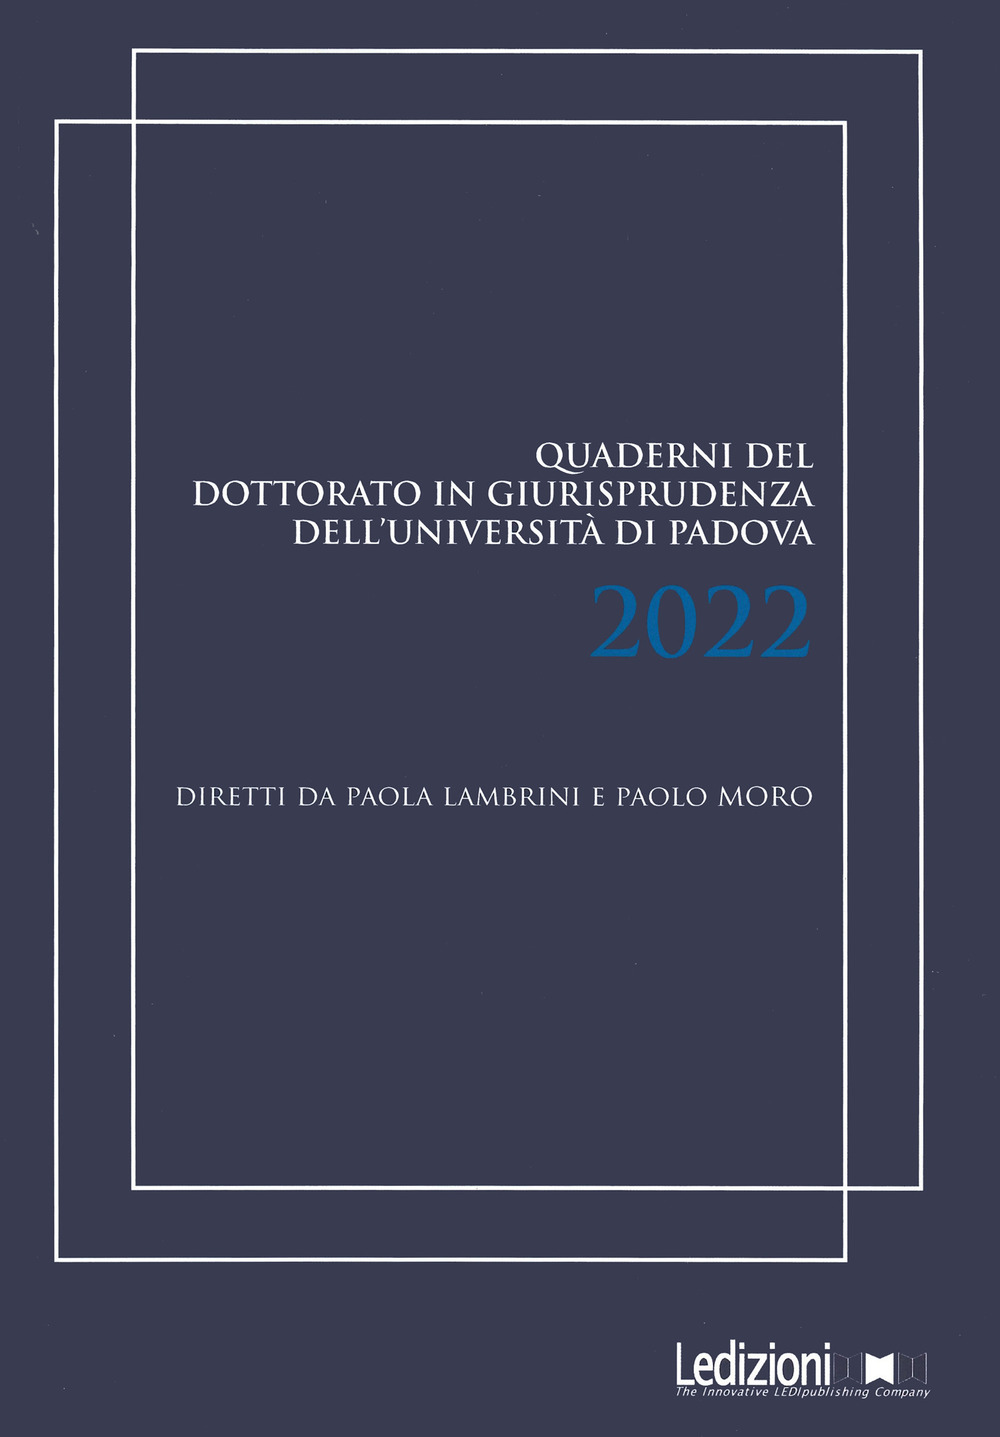 Quaderni del dottorato in giurisprudenza dell'Università di Padova 2022